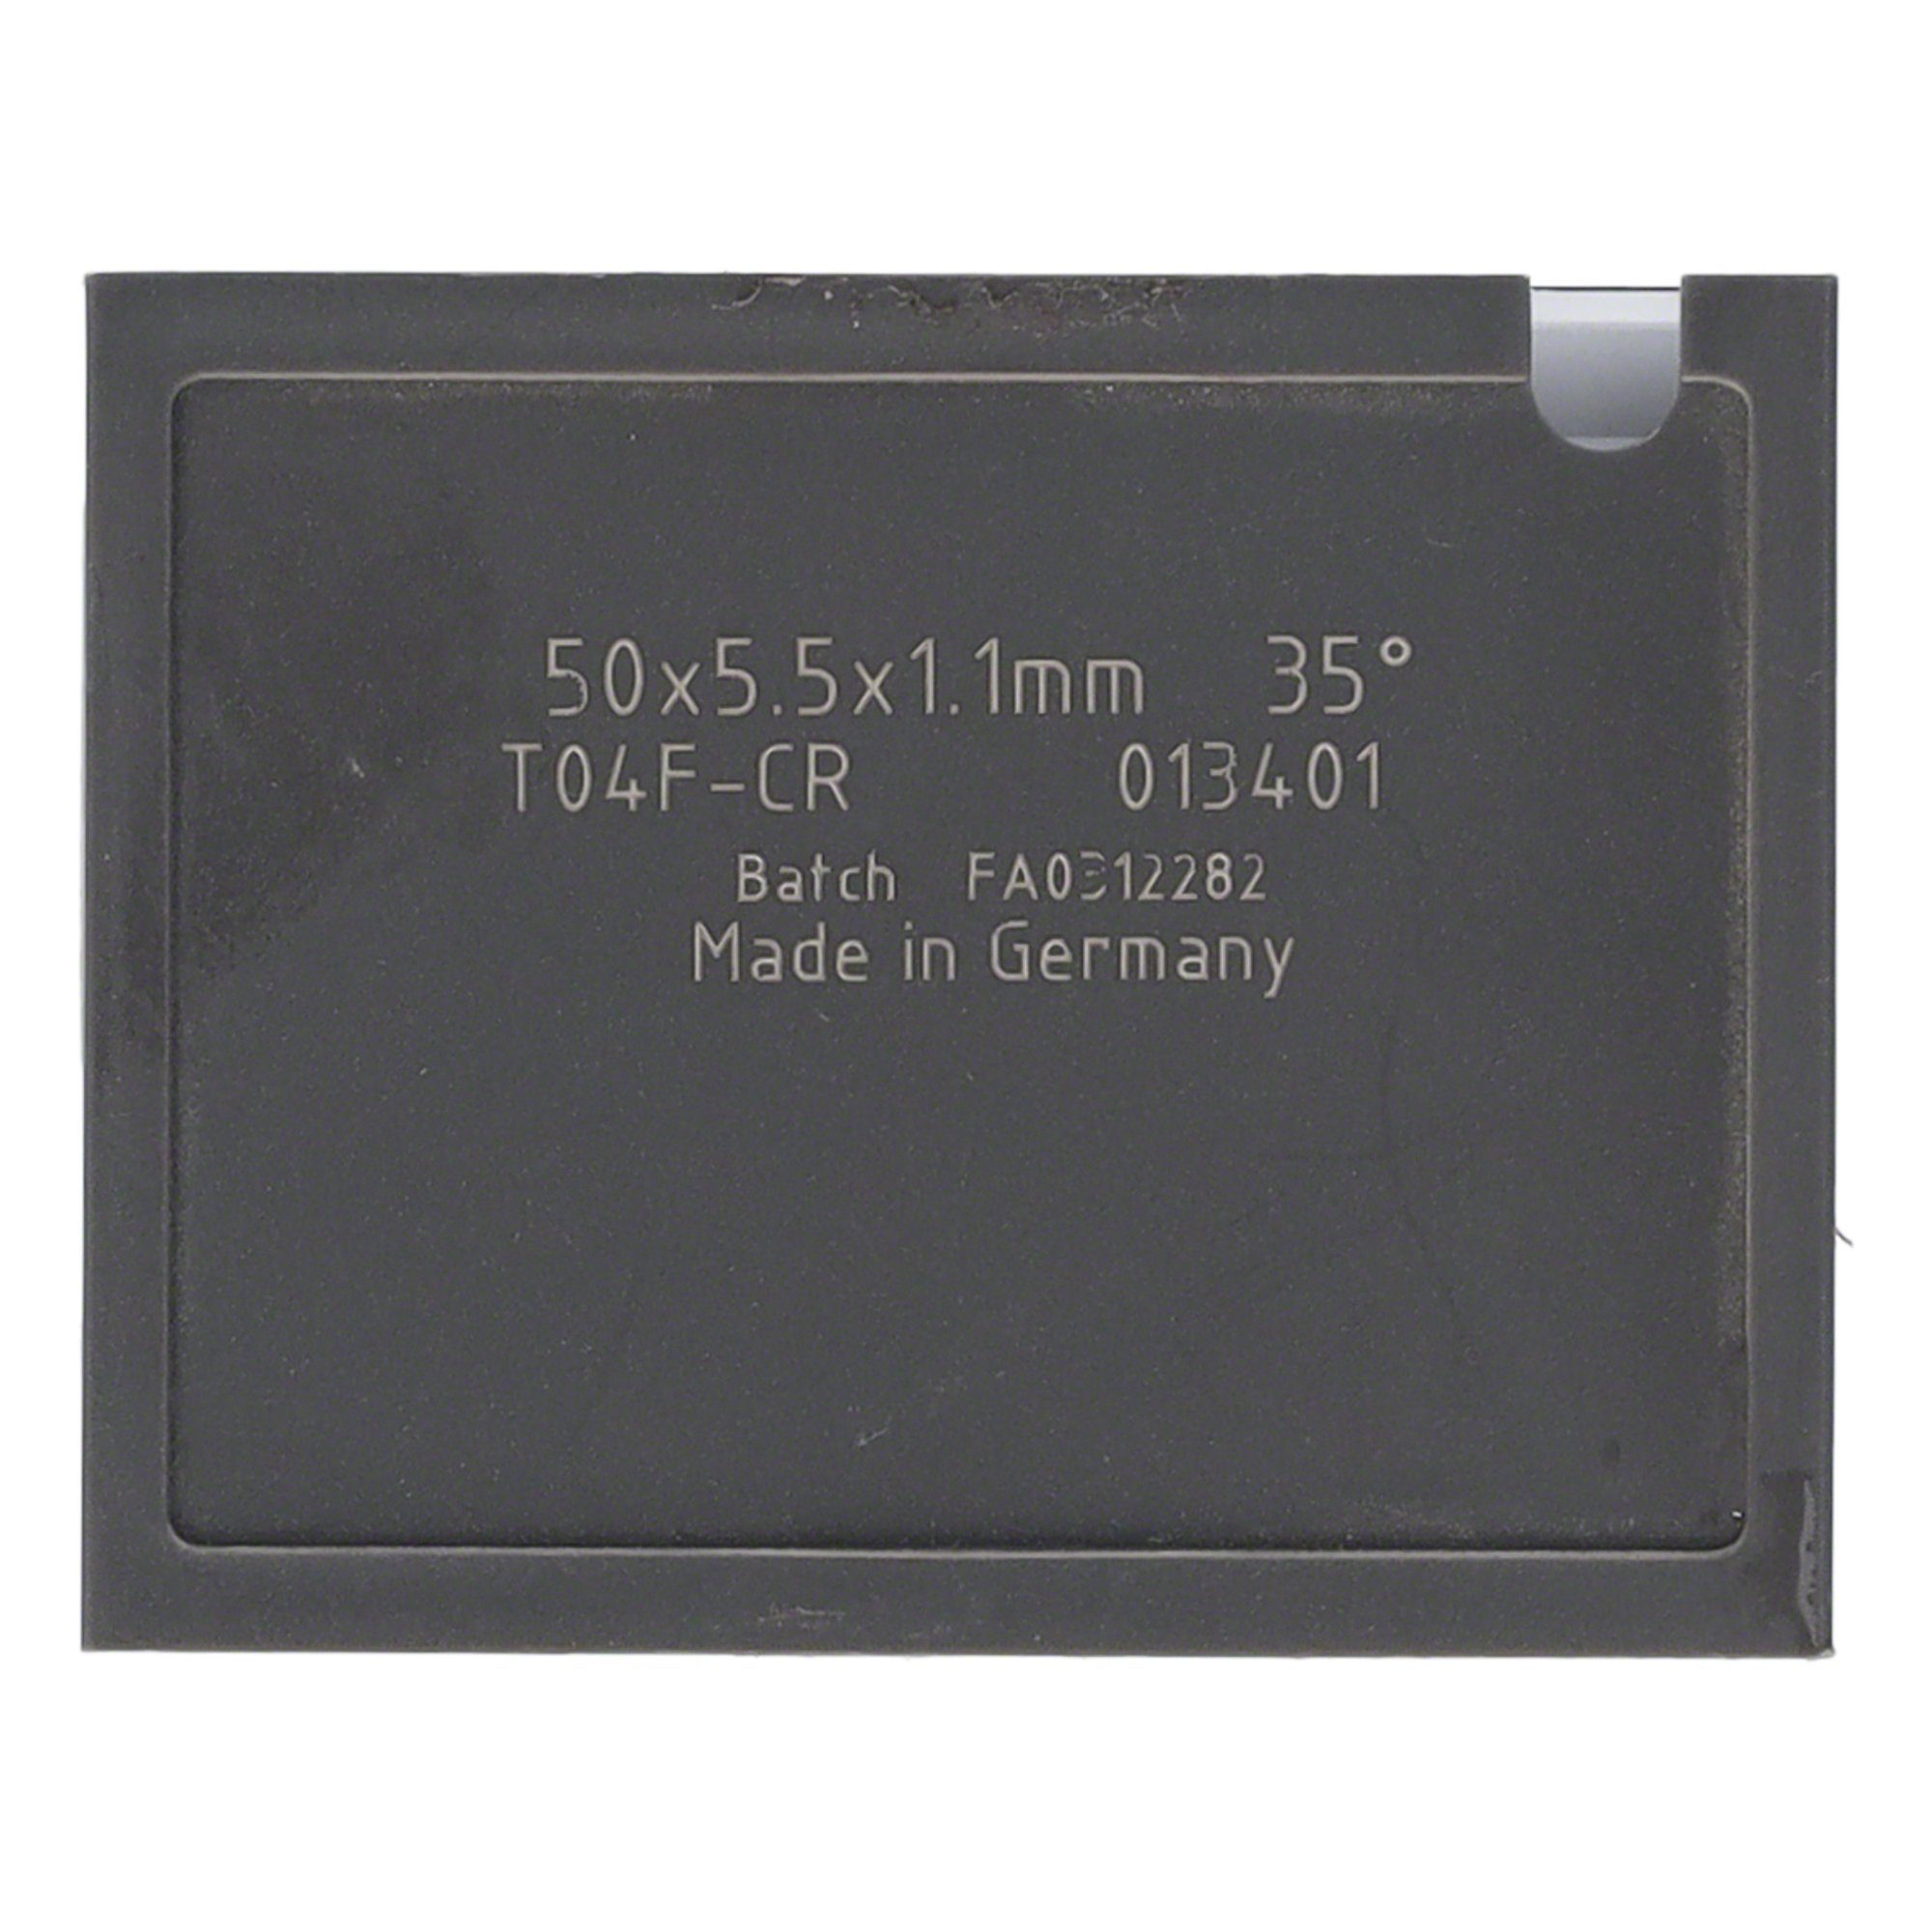 Tigra 4 und - Quernut Mini-Wendeplatte Wendeplattenfräser Brust 38 St. T04F 20x5,5x1,1mm